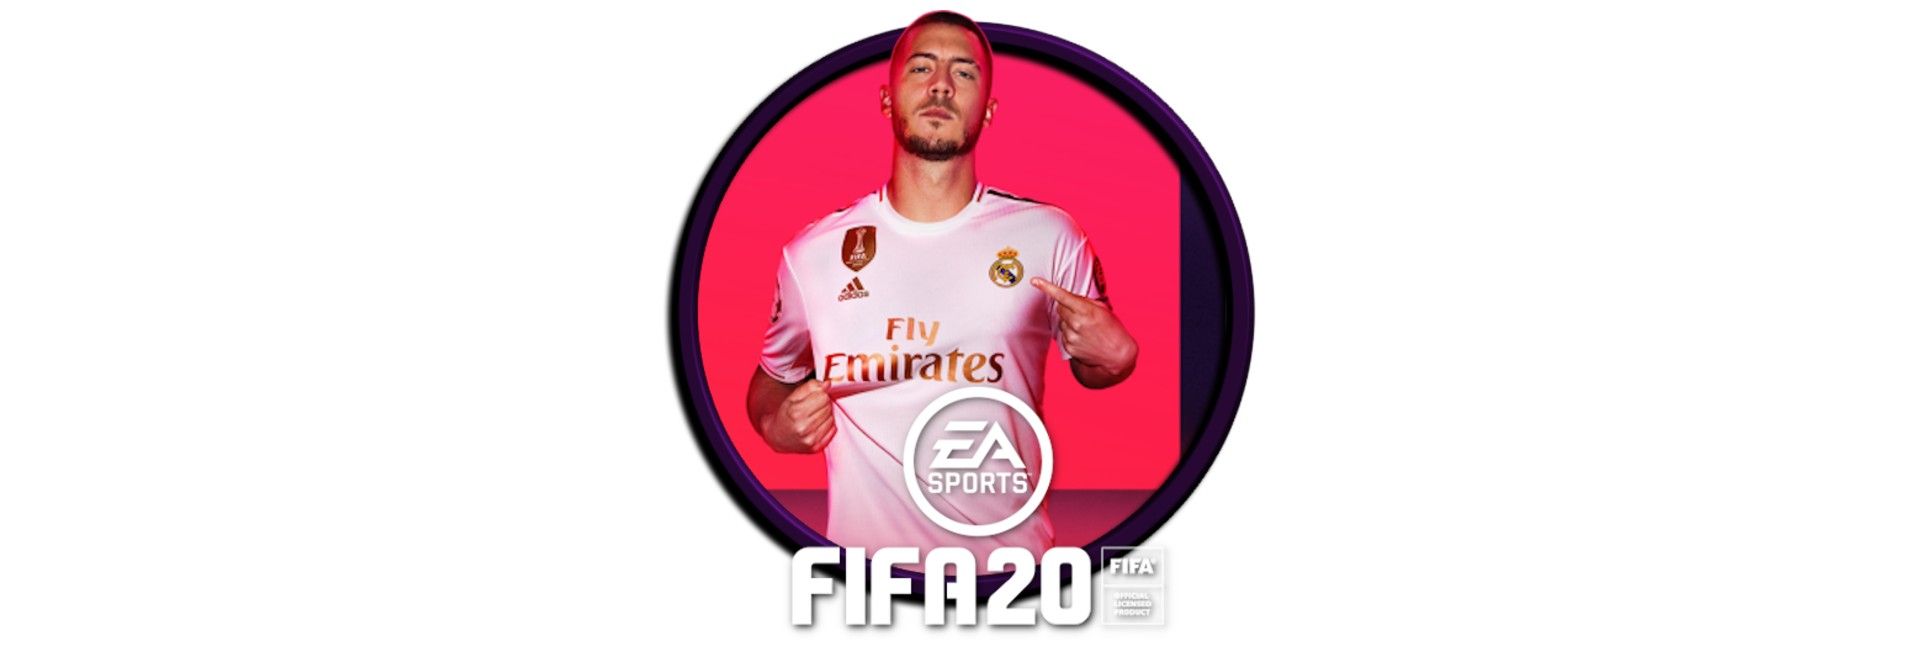 FIFA 20 image 1 | Rakuten